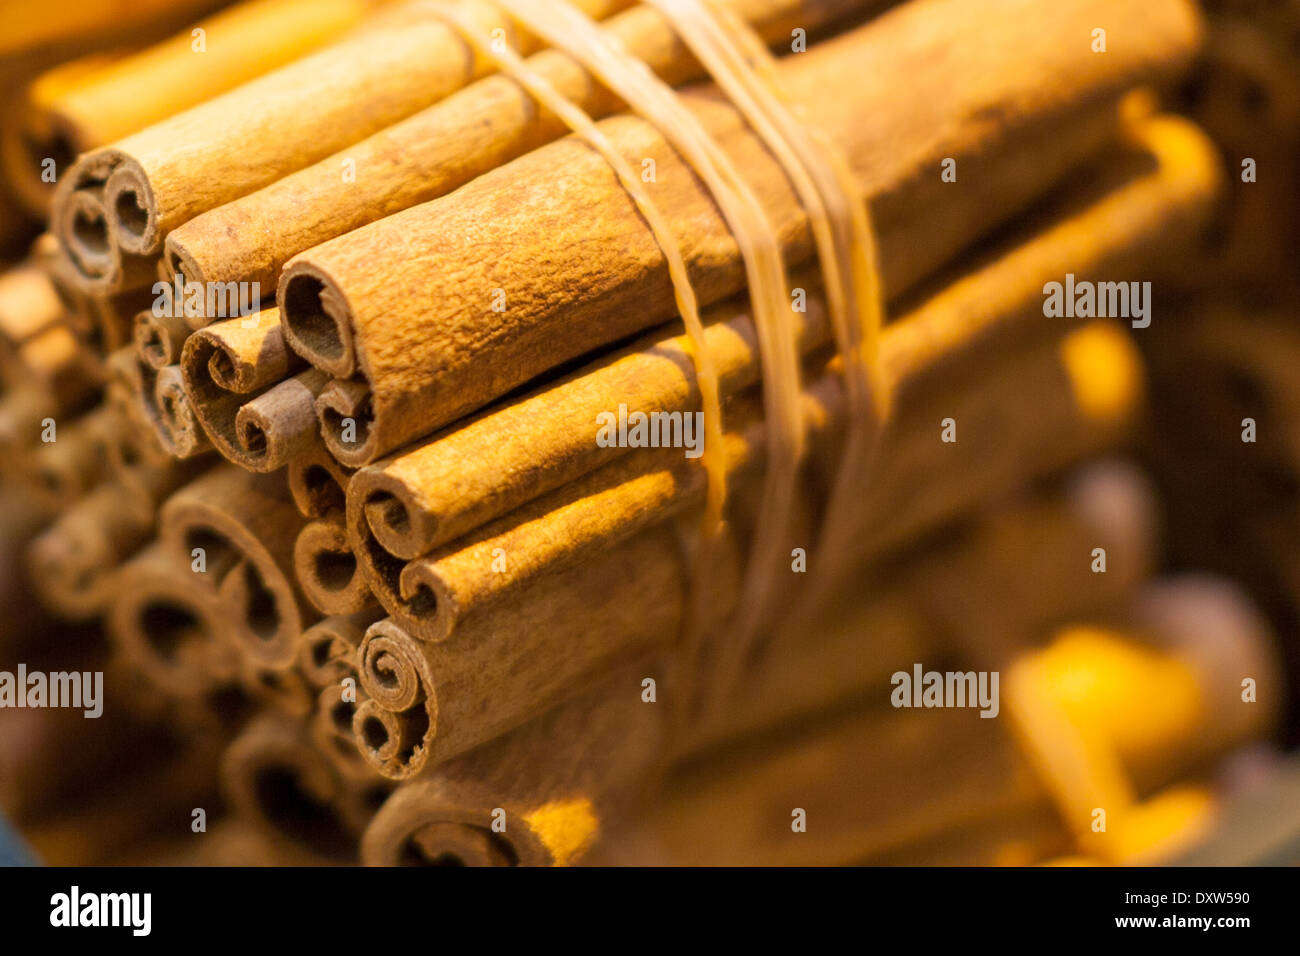 Cinnamon in turkish market stall Stock Photo